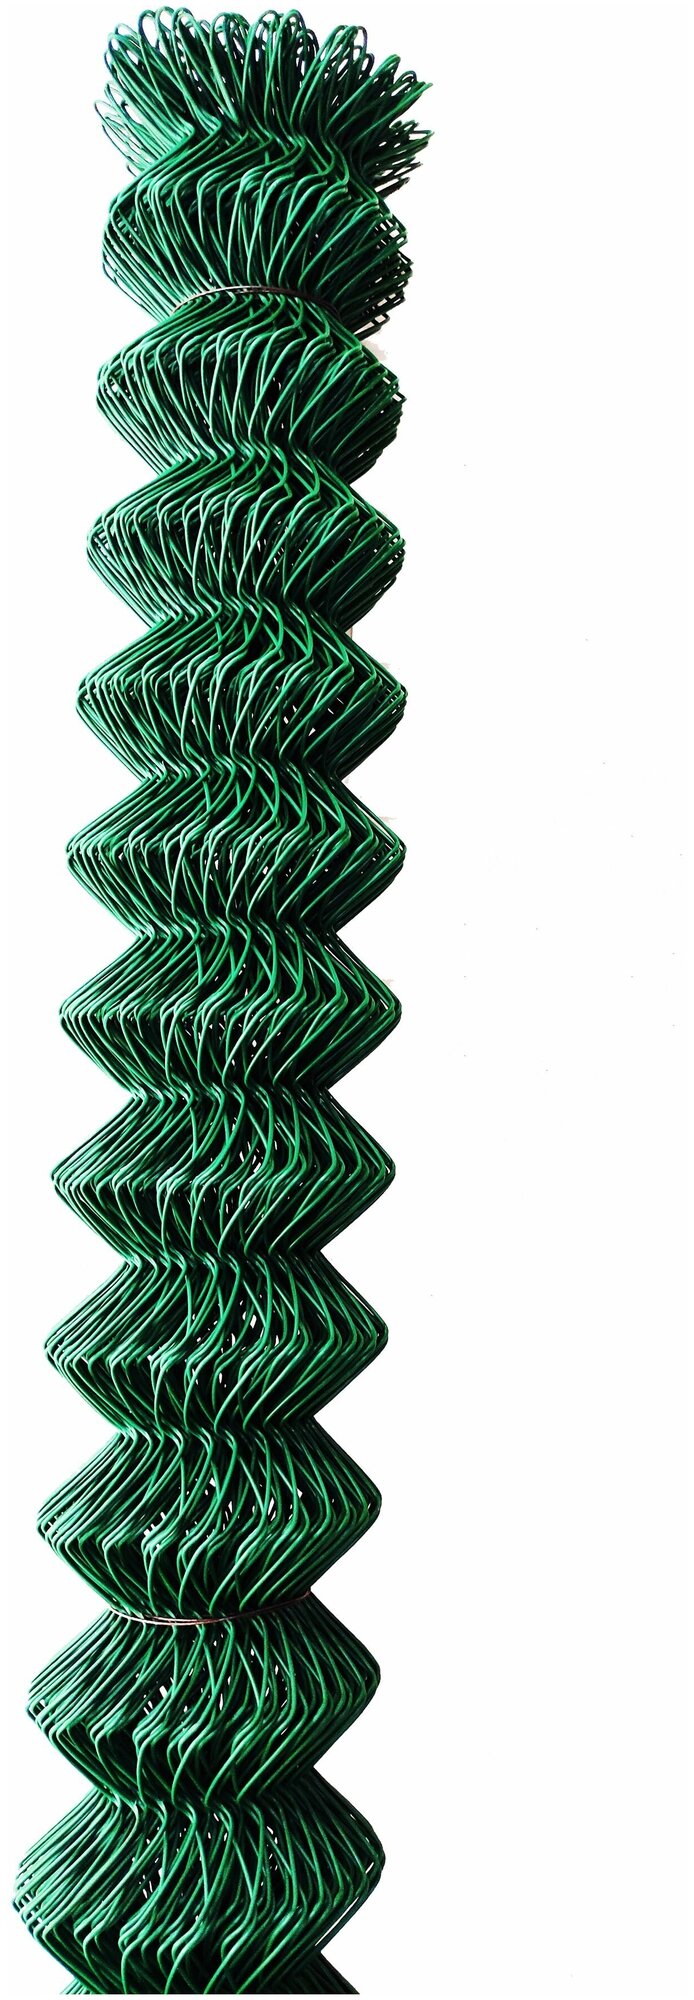 Сетка рабица ПНД зеленая (ячейка 55*55мм, высота 1м, длина 10м)